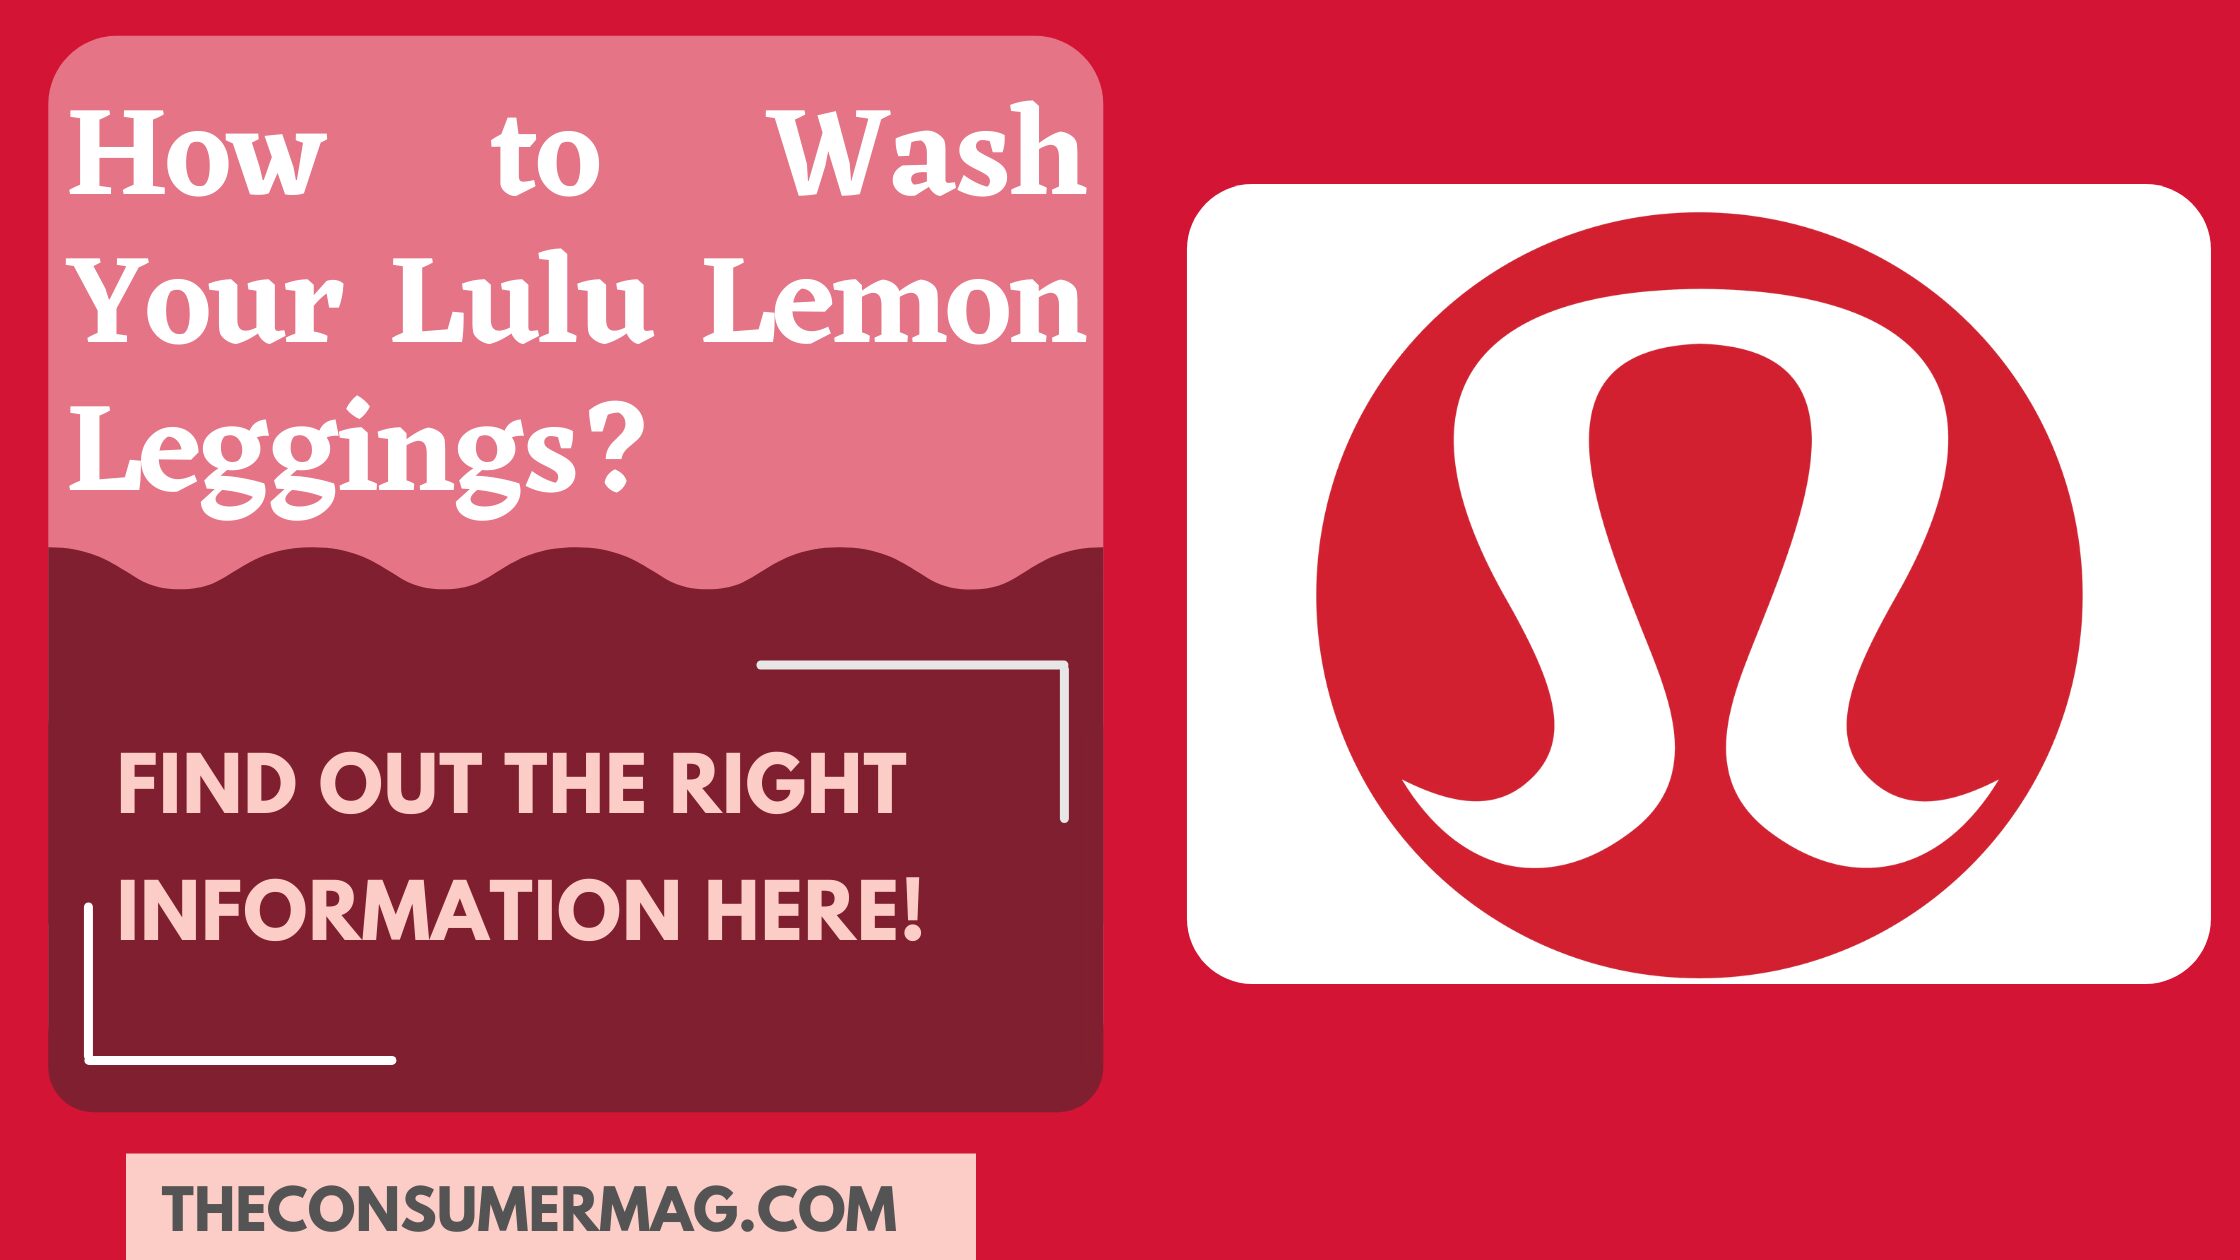 How to Wash Your Lulu Lemon Leggings